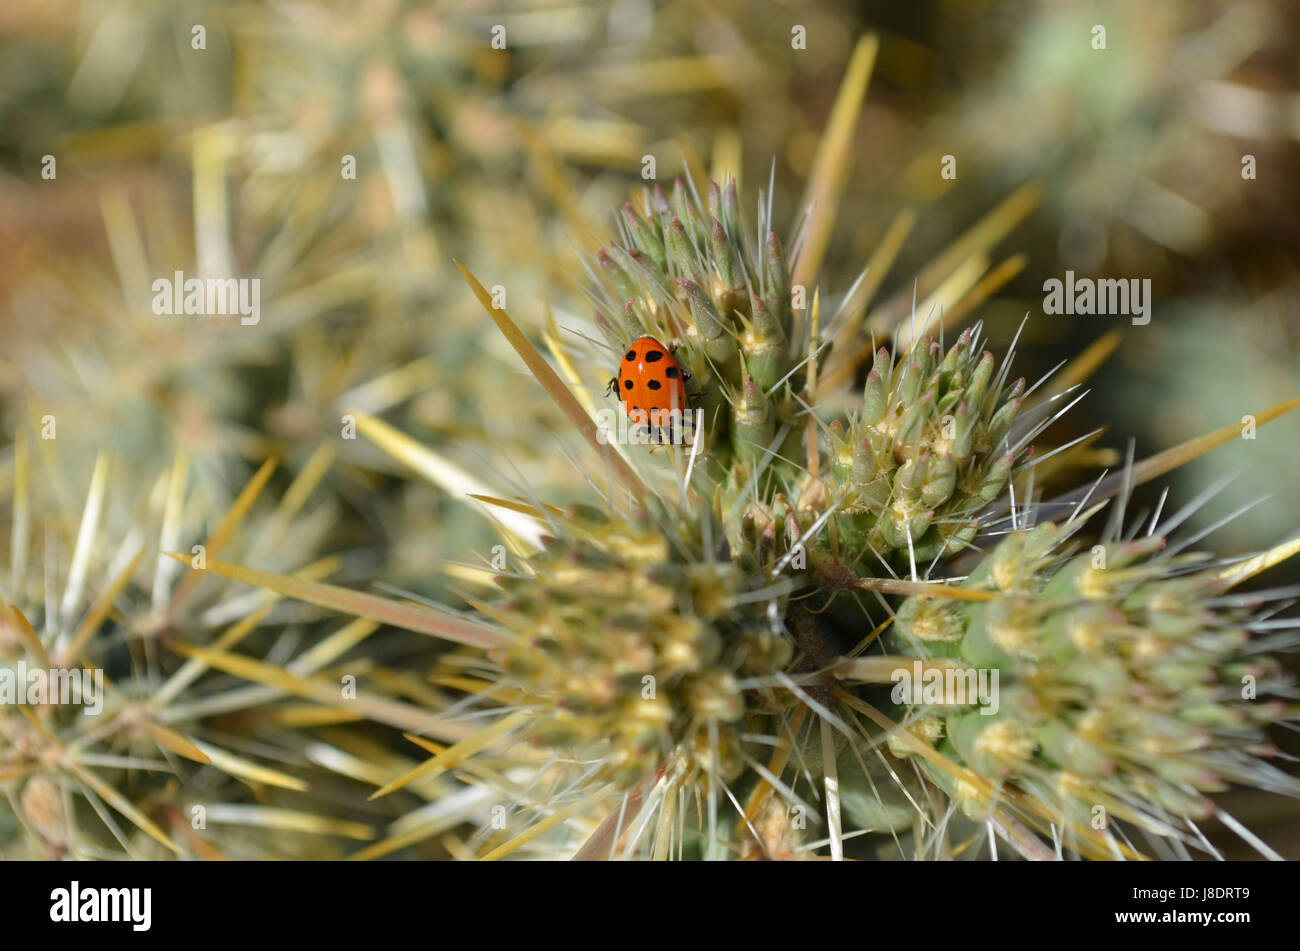 Lady bug crawling on cholla cactus. Stock Photo